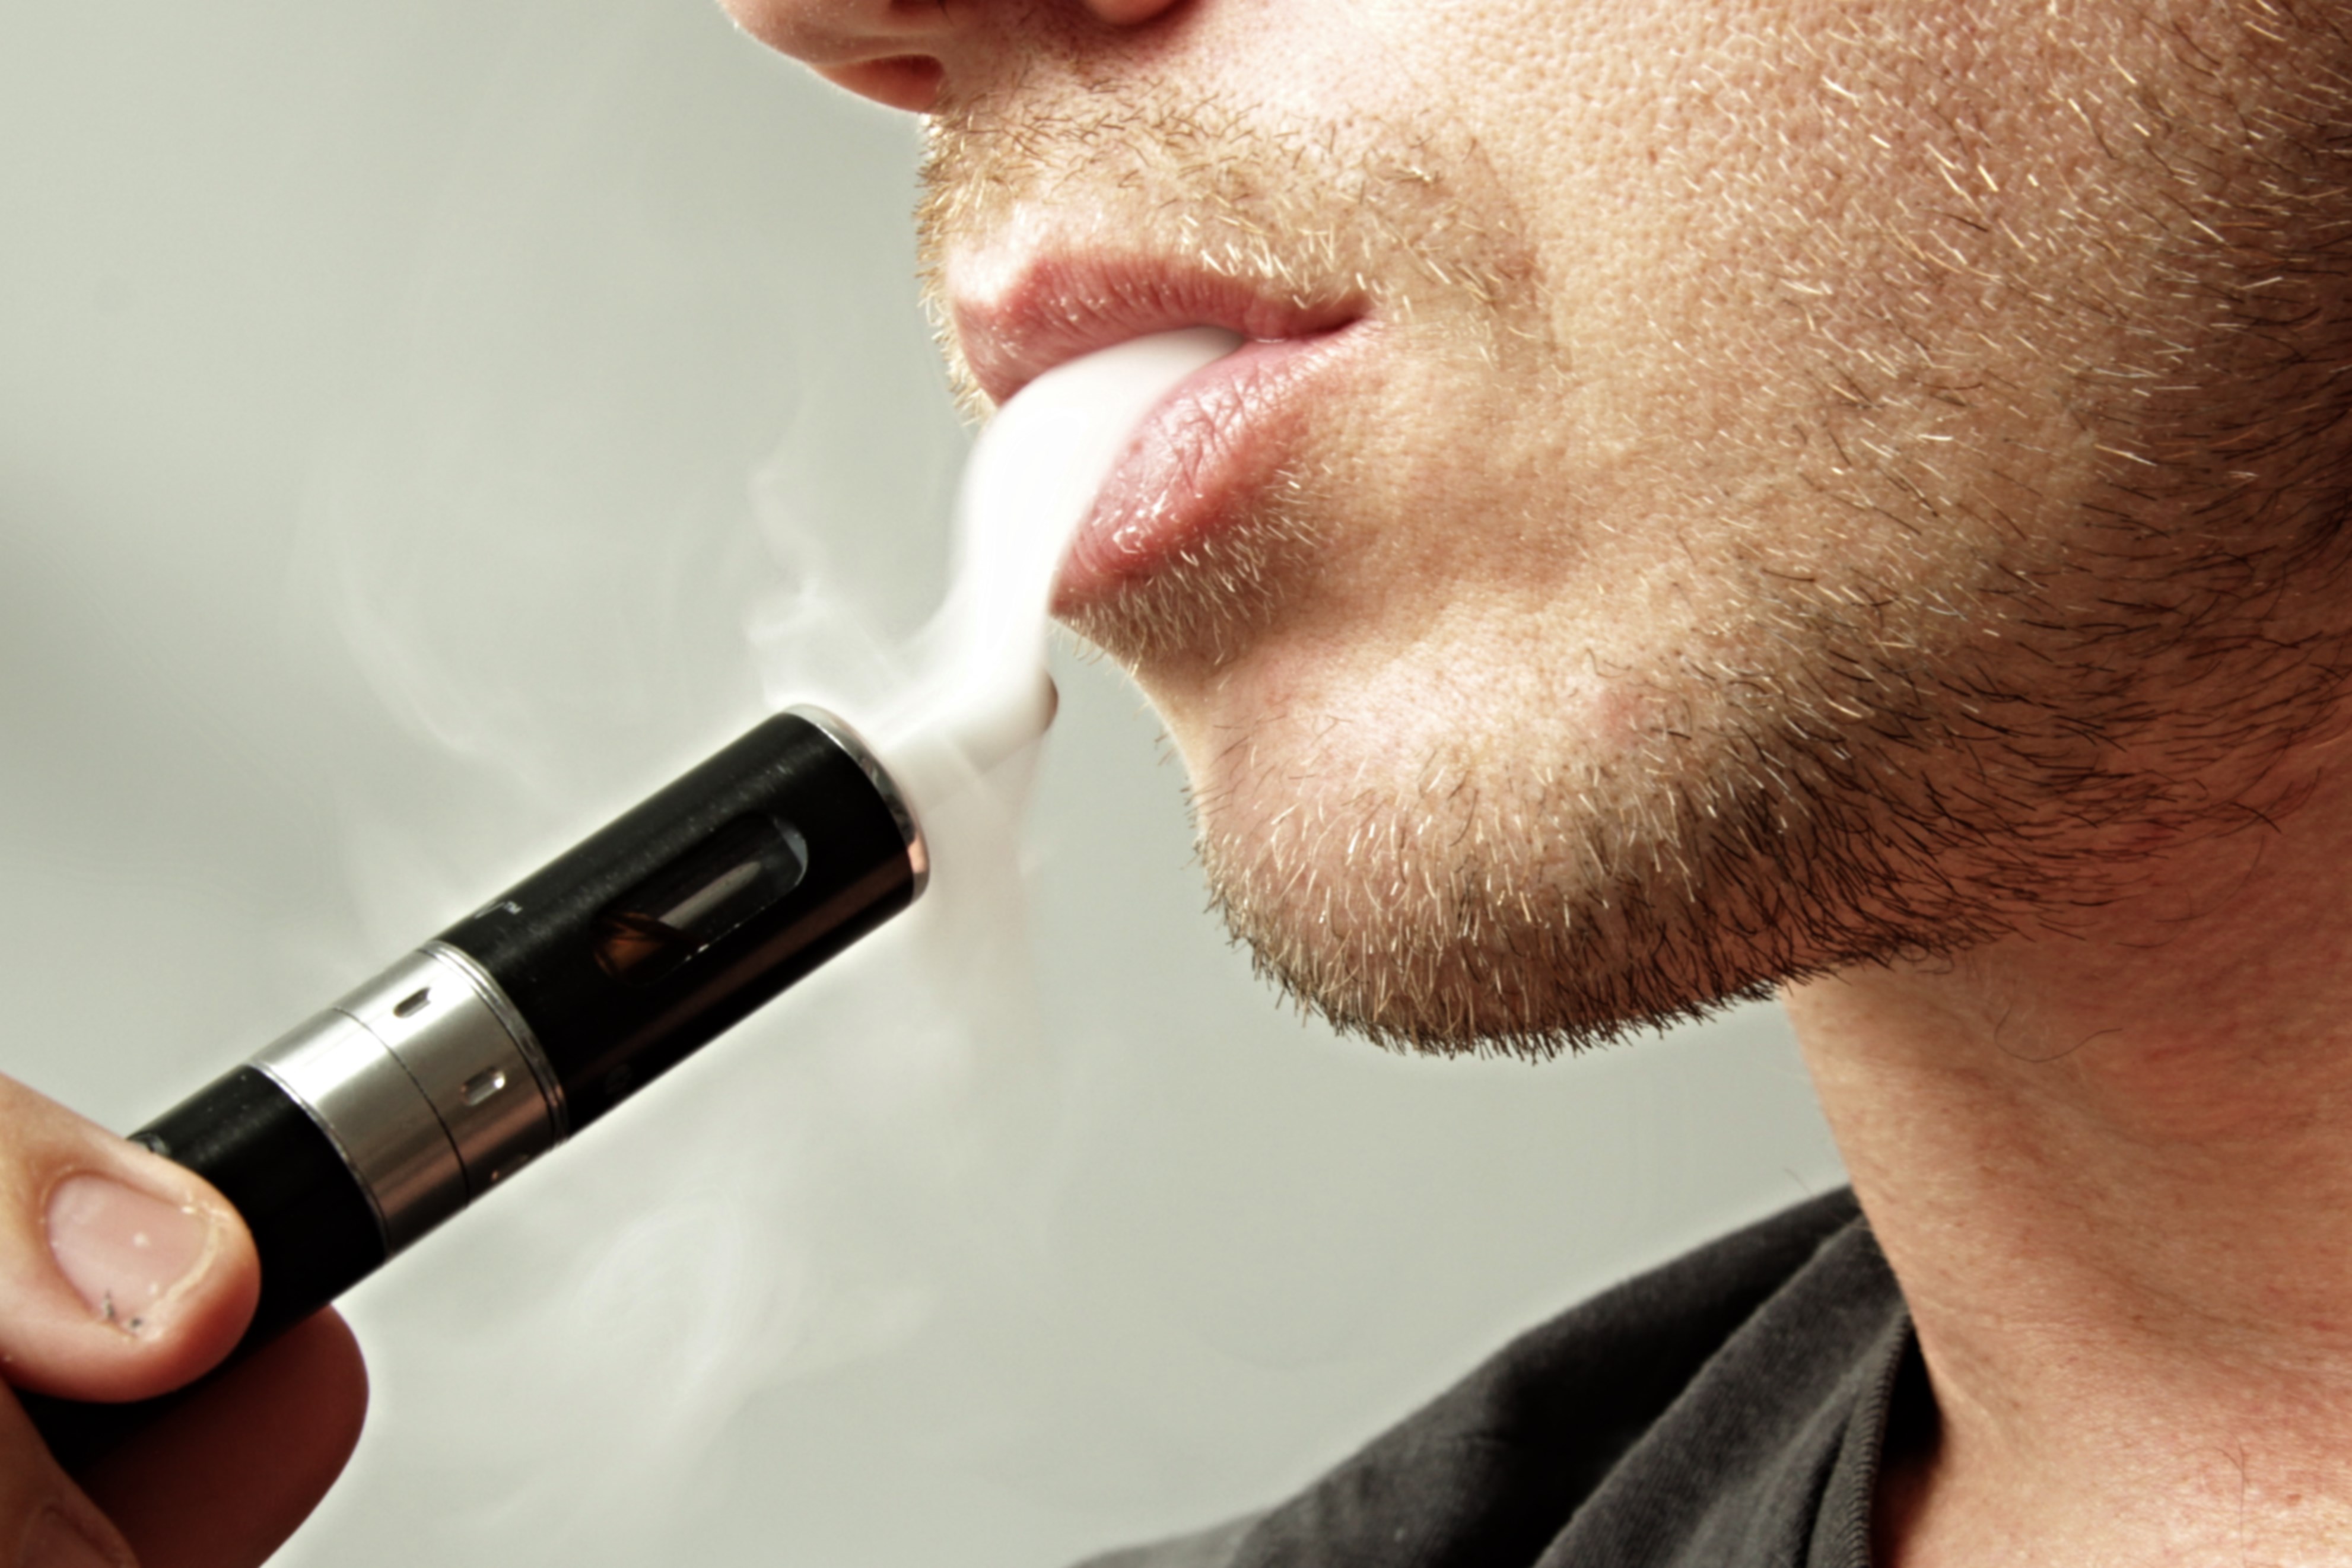 E-Cigarette Vapor Inhibits Immune System